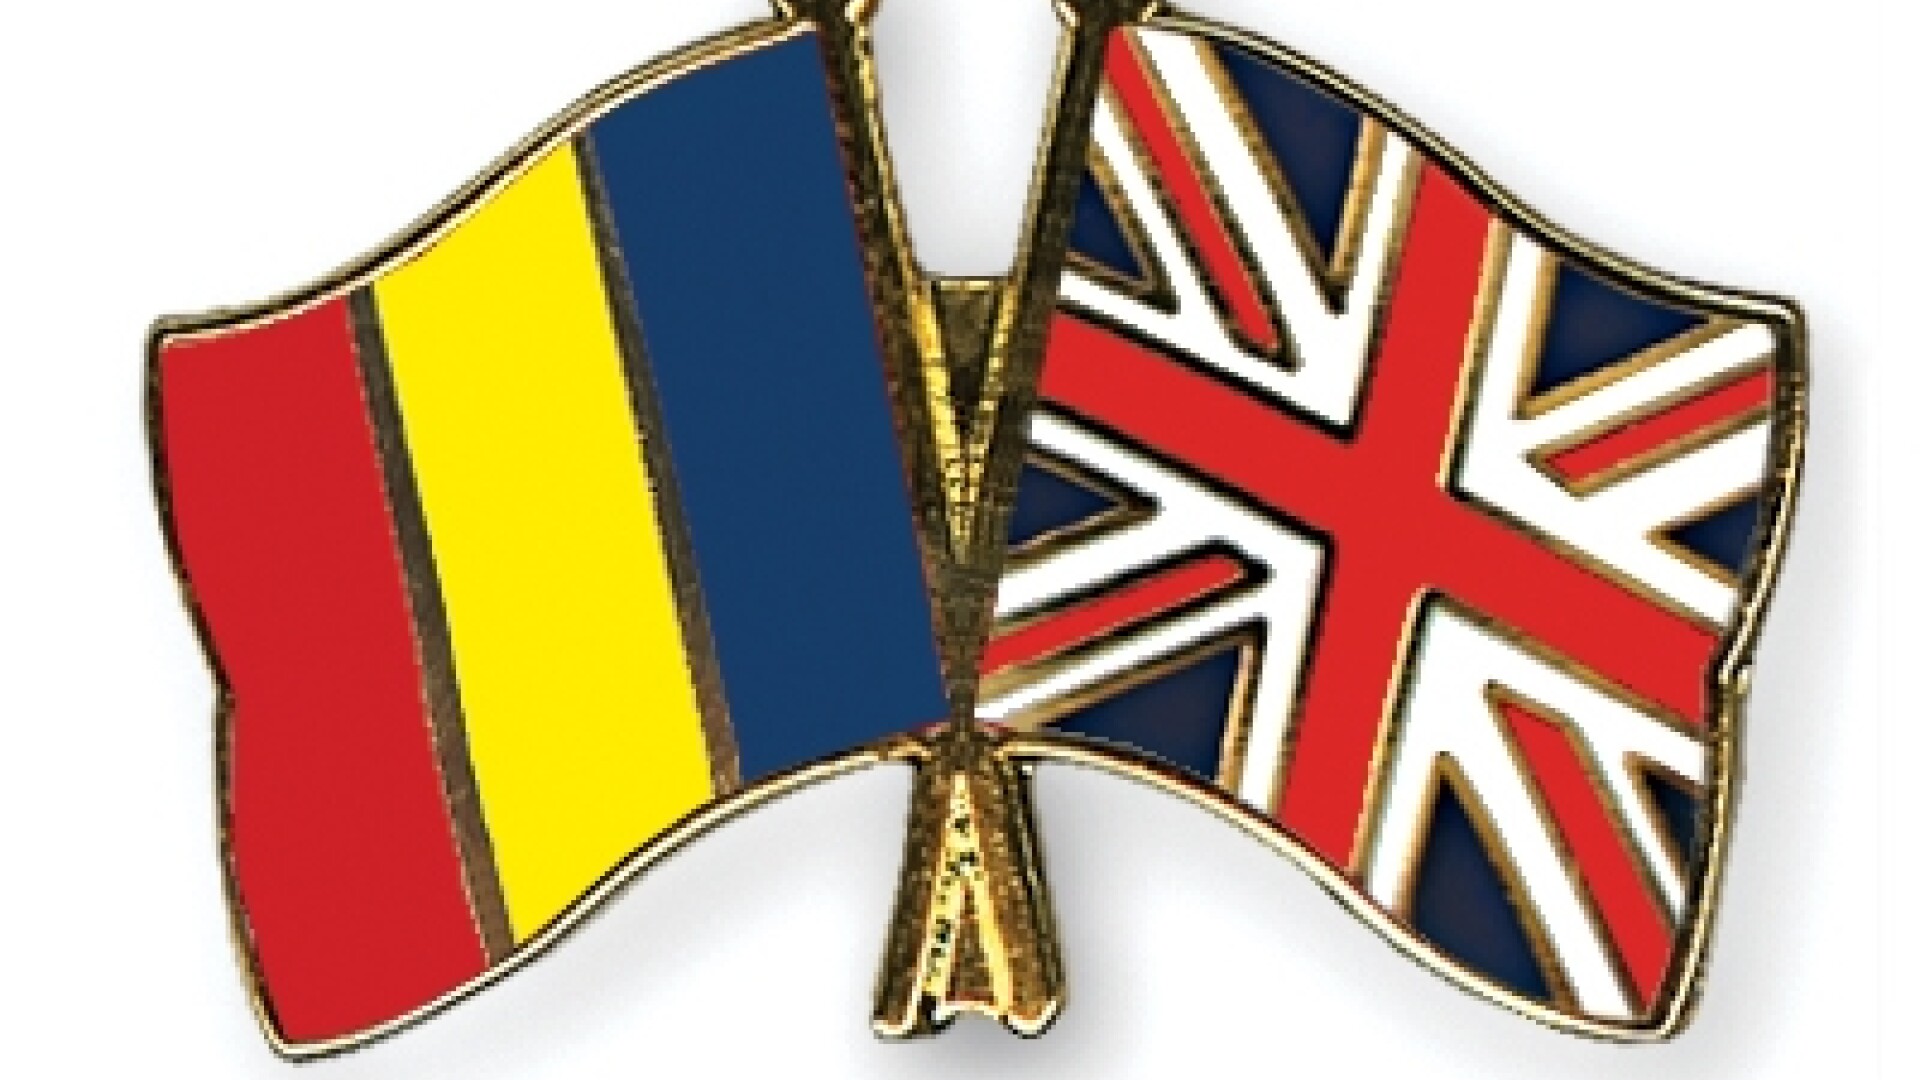 Steaguri Romania si Anglia